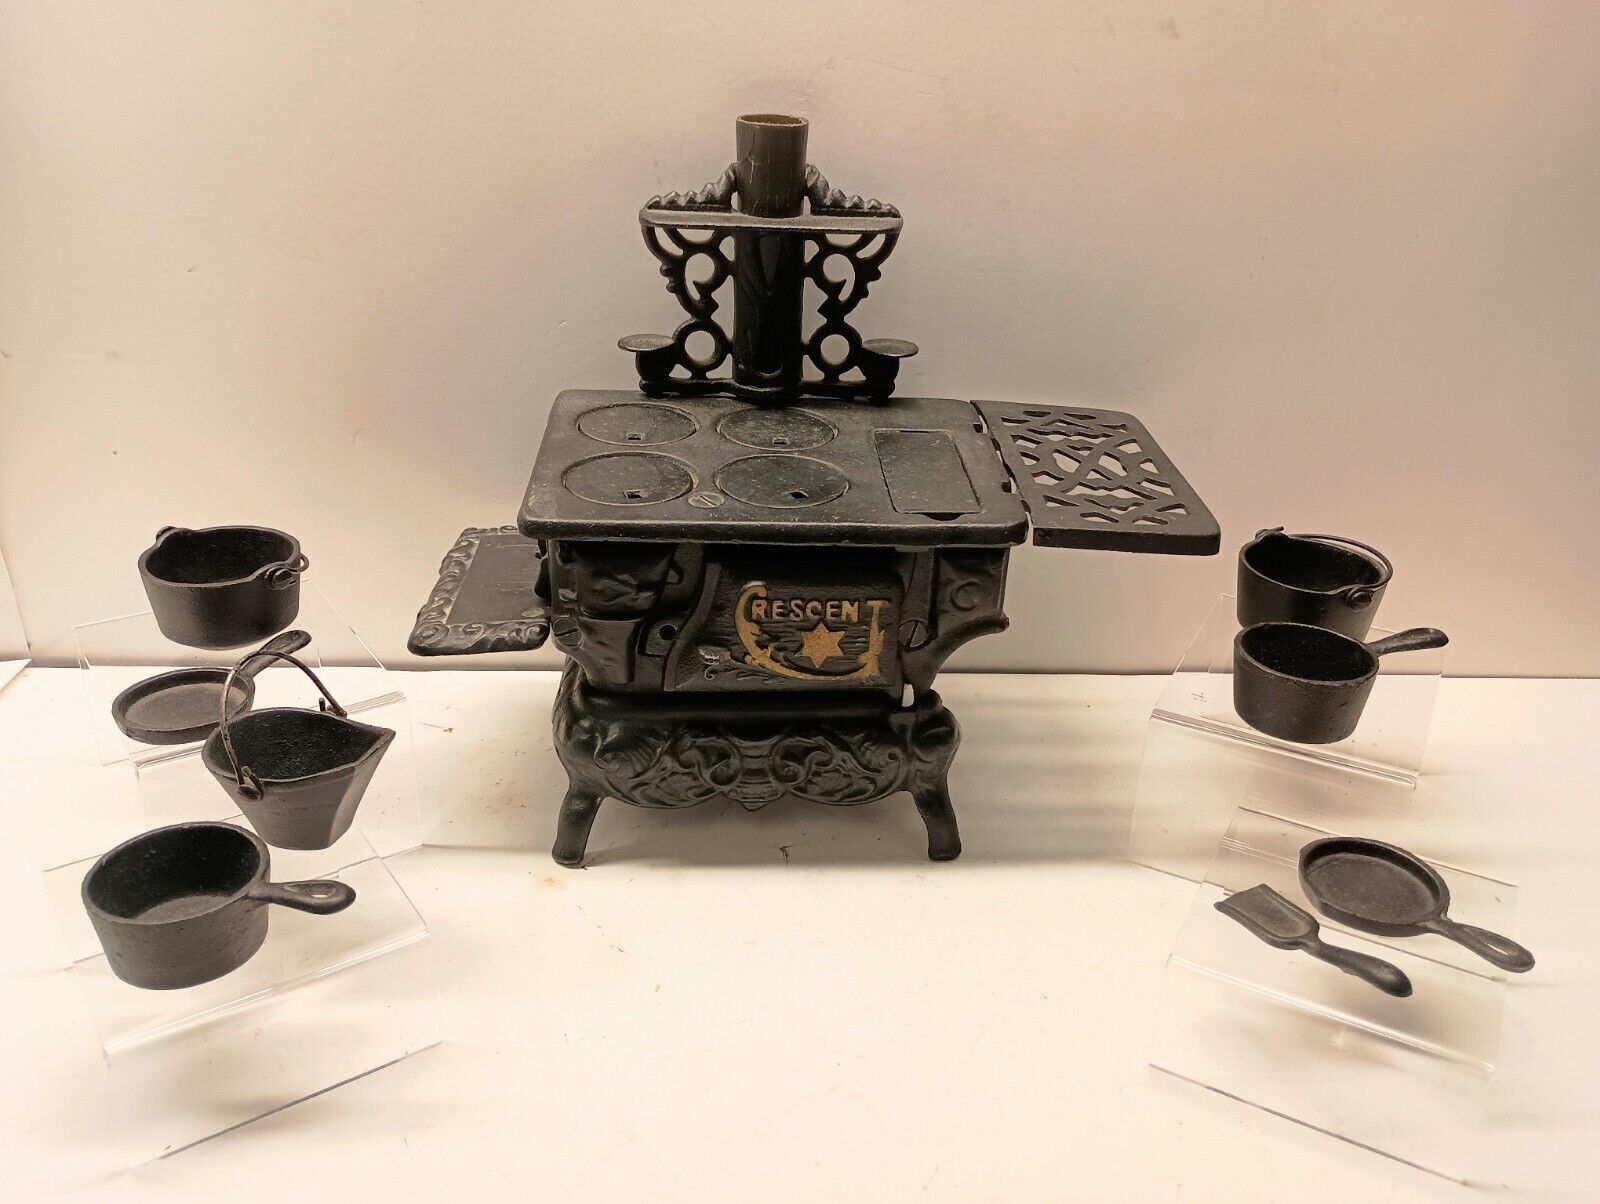 CRESCENT Vintage Mini Toy Cast Iron Wood Stove Pots + Pans + Accessories 